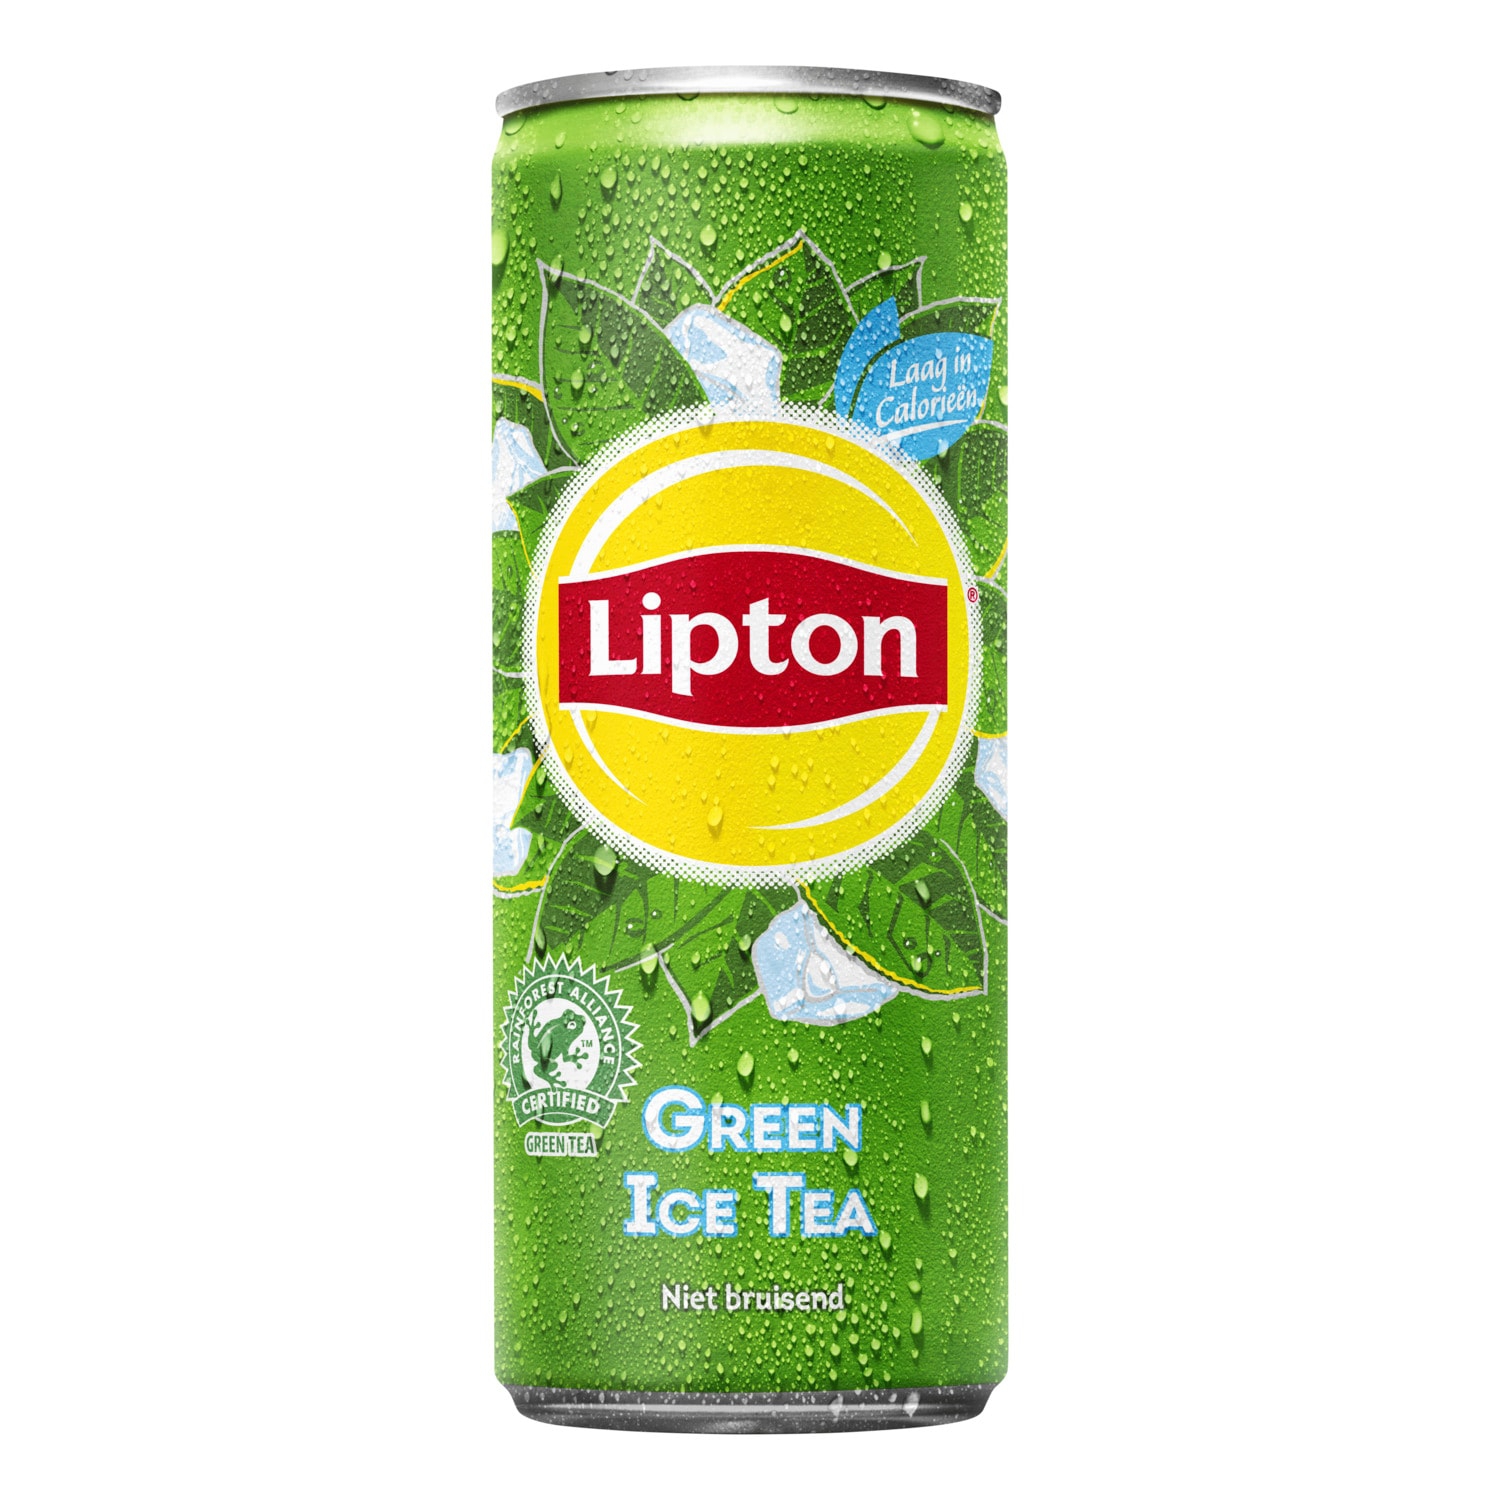 Зеленый чай в банке. Липтон 0.25. Чай Липтон зеленый чай 0,5. Липтон зелёный холодный чай. Липтон Ice Tea.